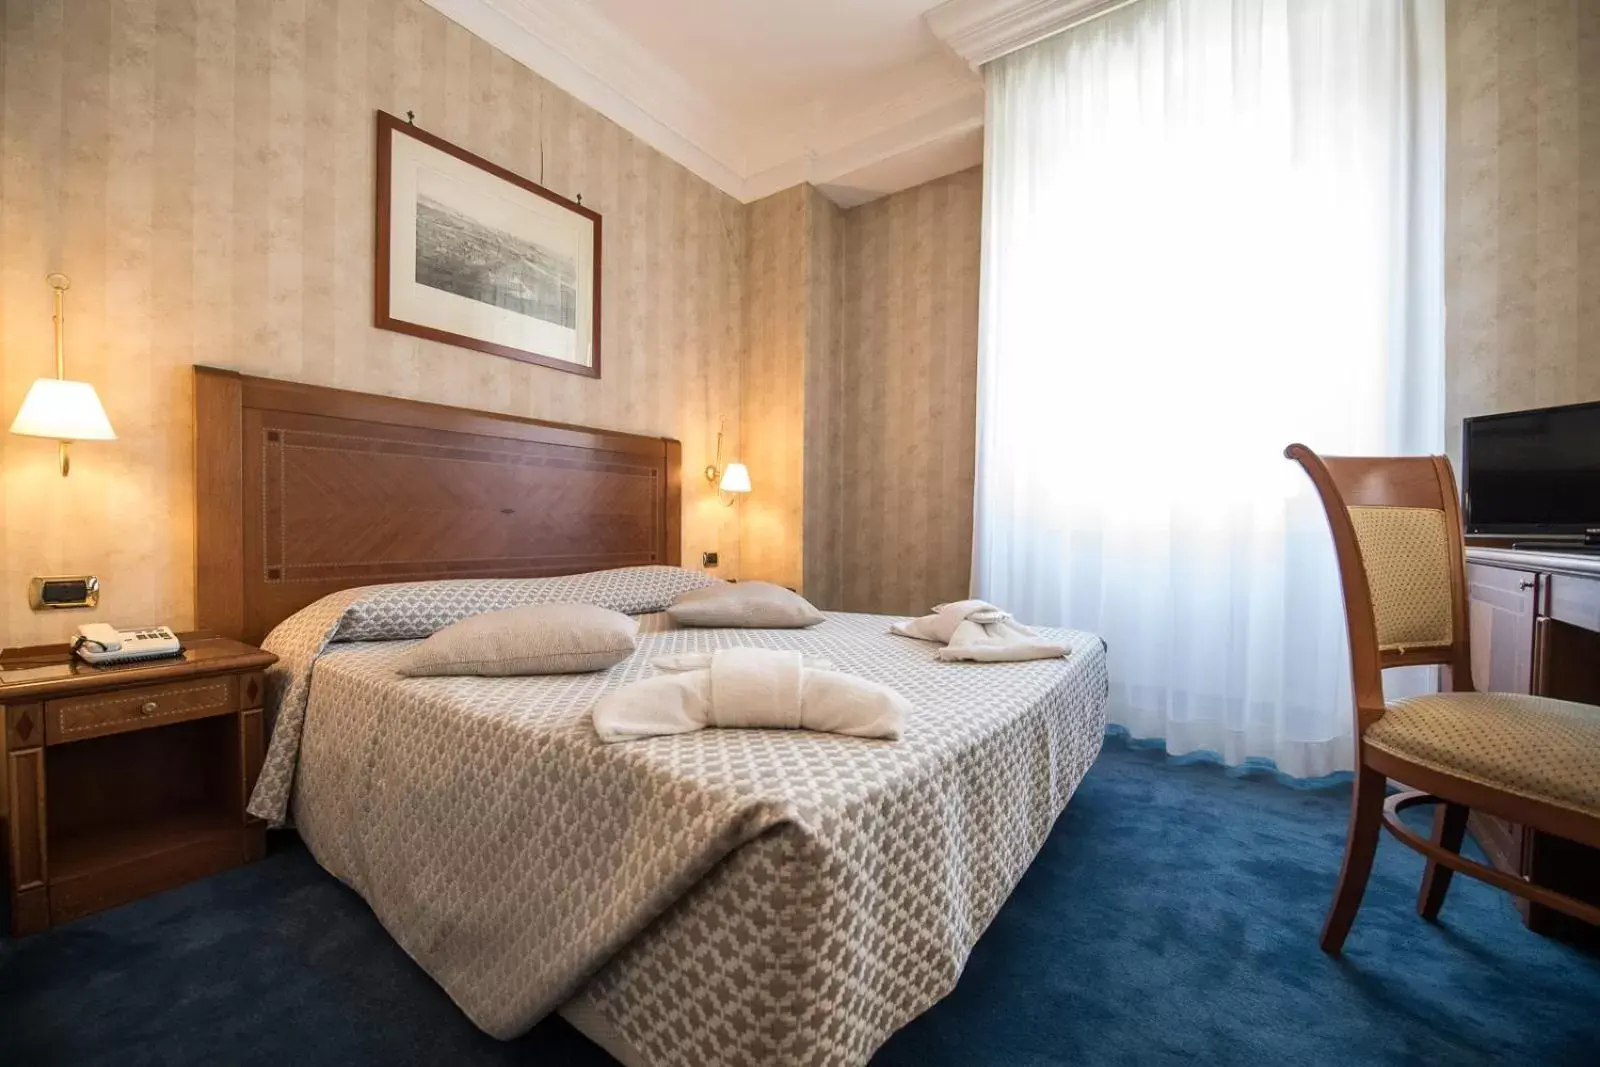 Bed in Quality Hotel Nova Domus